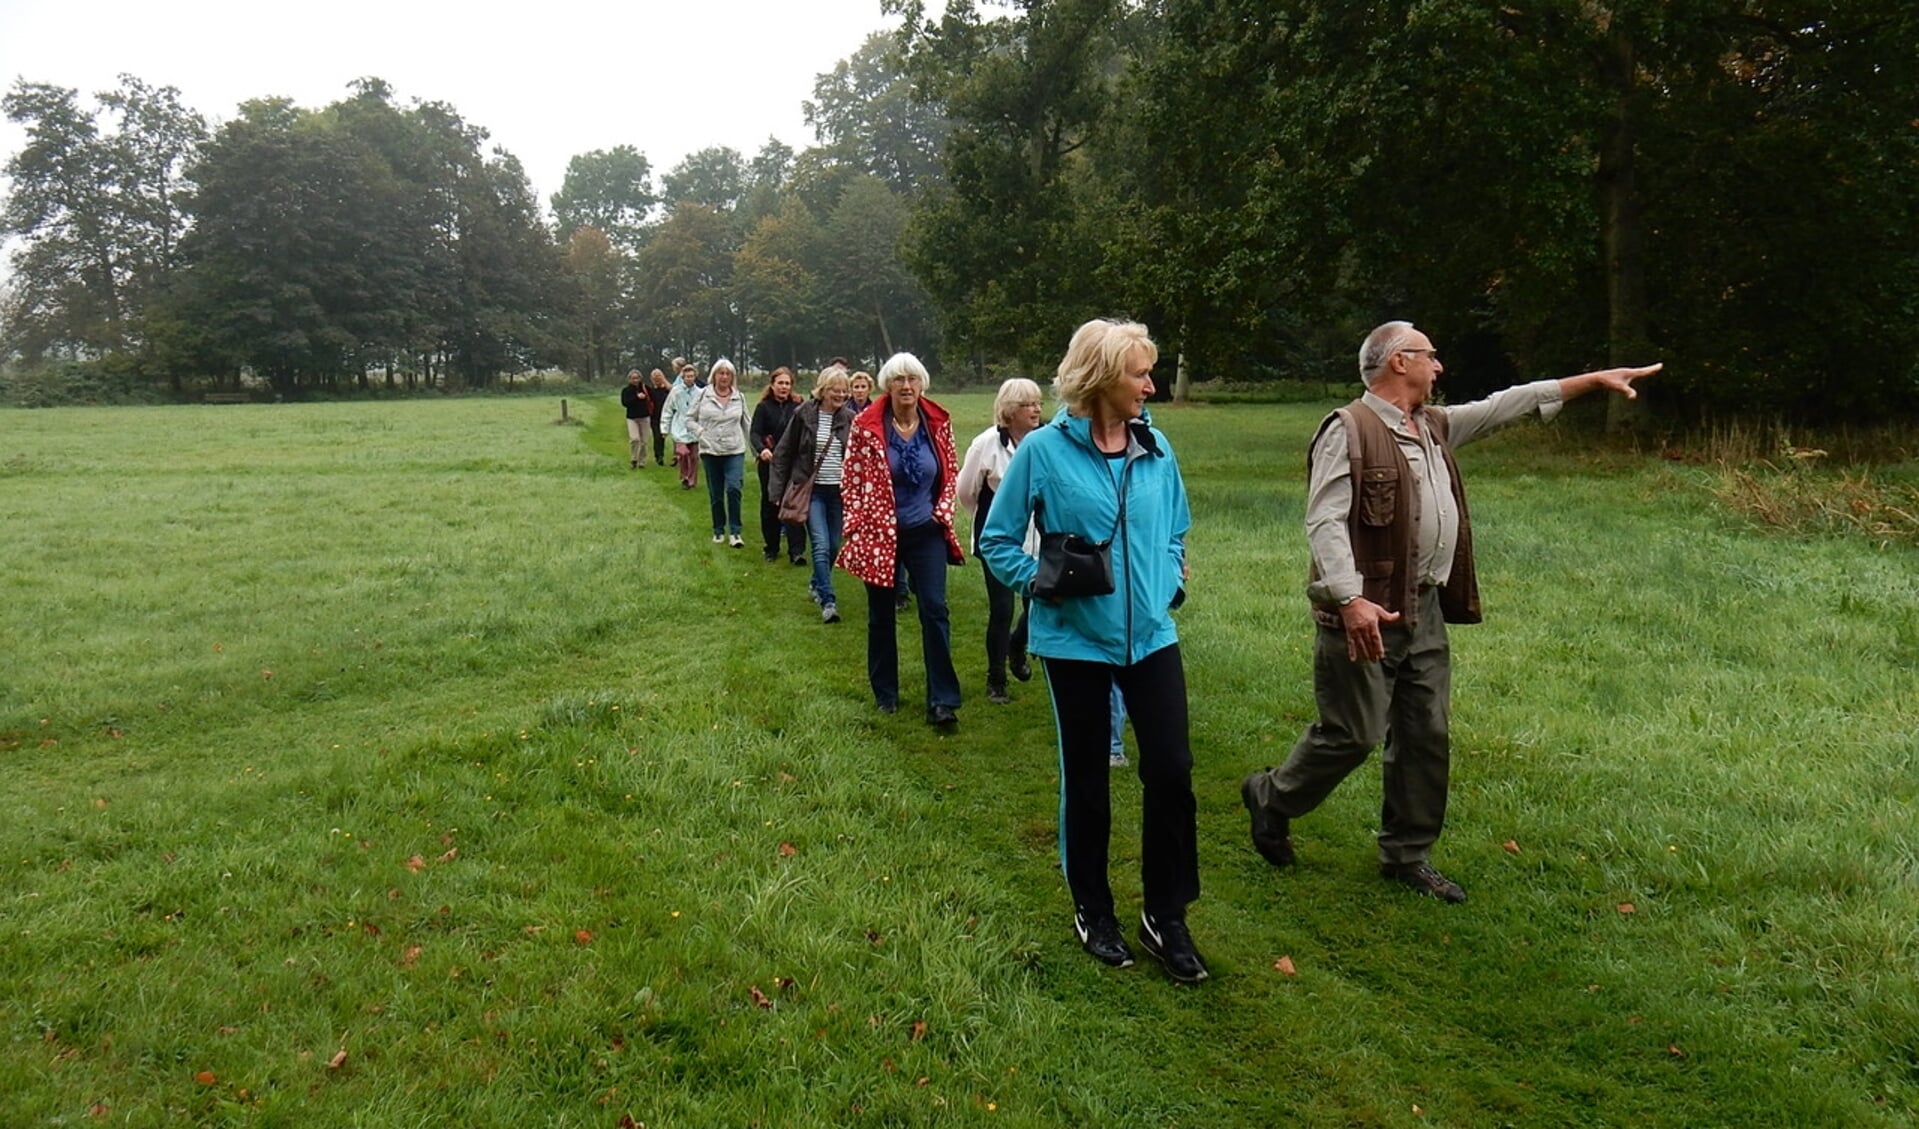 Stichting Gezond Natuur Wandelen brengt buurtgenoten samen met een wekelijks uurtje wandelen door het groen.